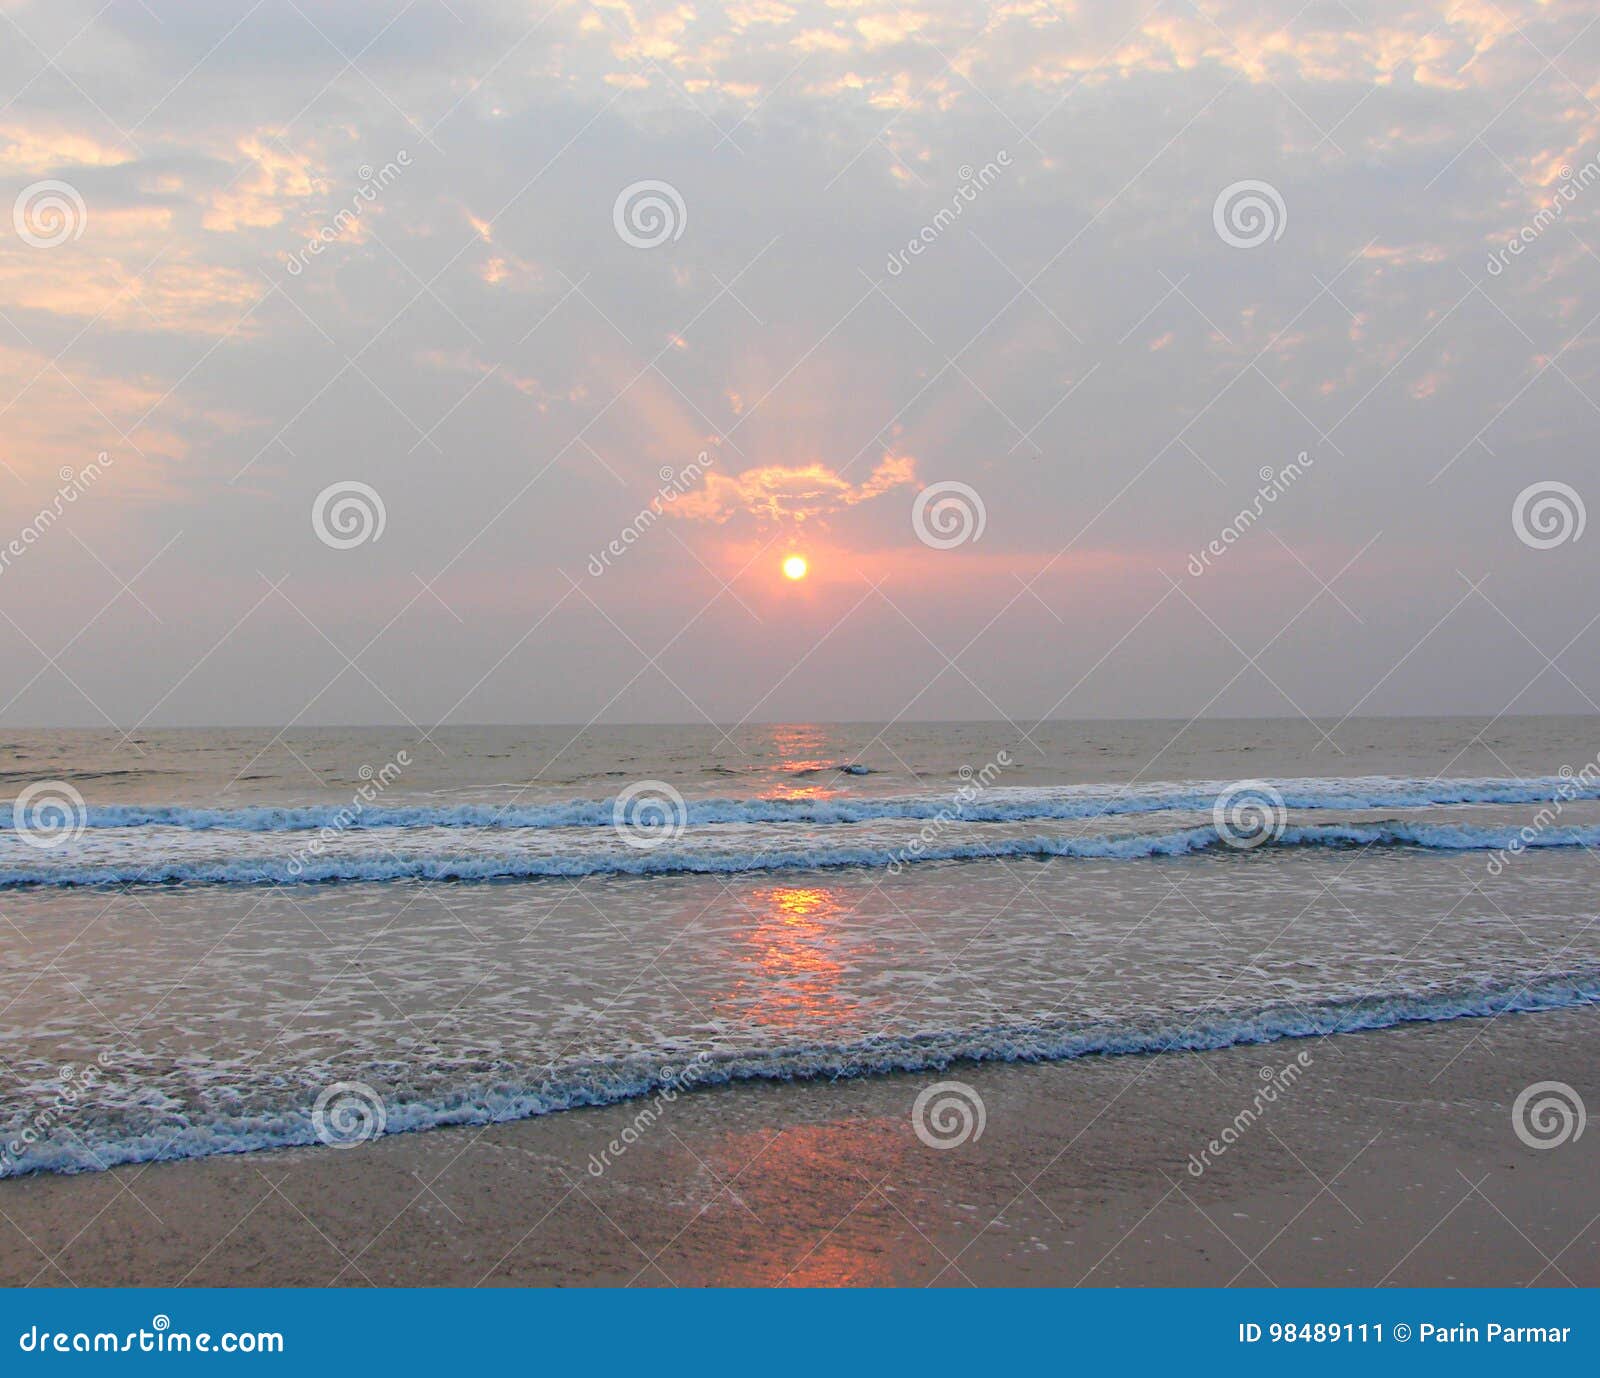 golden sun, sunrays through clouds and reflection in sea water - payyambalam beach, kannur, kerala, india